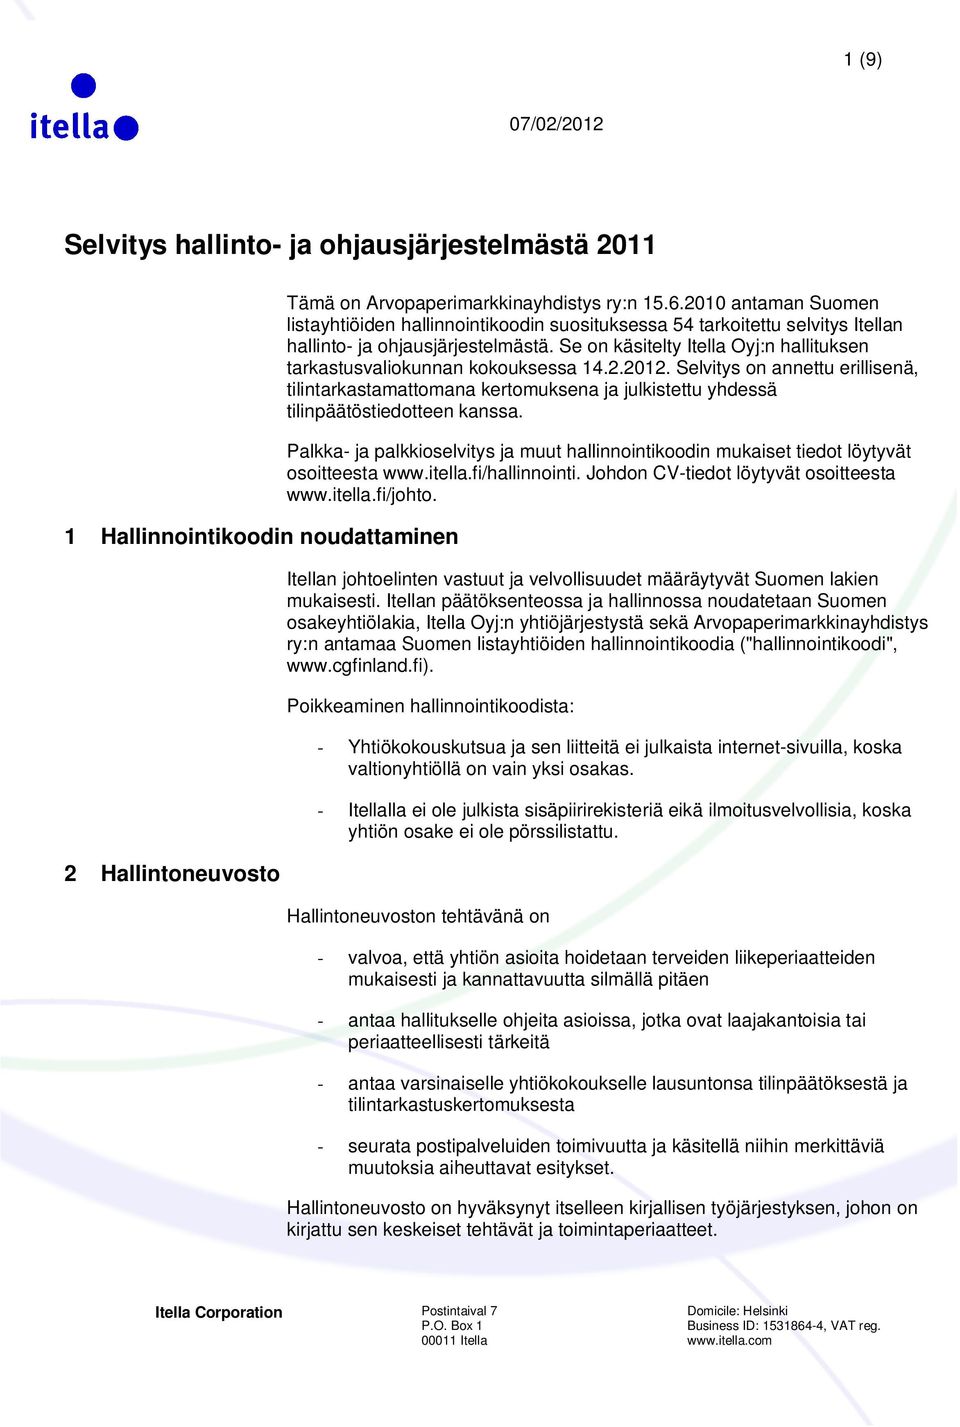 Se on käsitelty Itella Oyj:n hallituksen tarkastusvaliokunnan kokouksessa 14.2.2012.